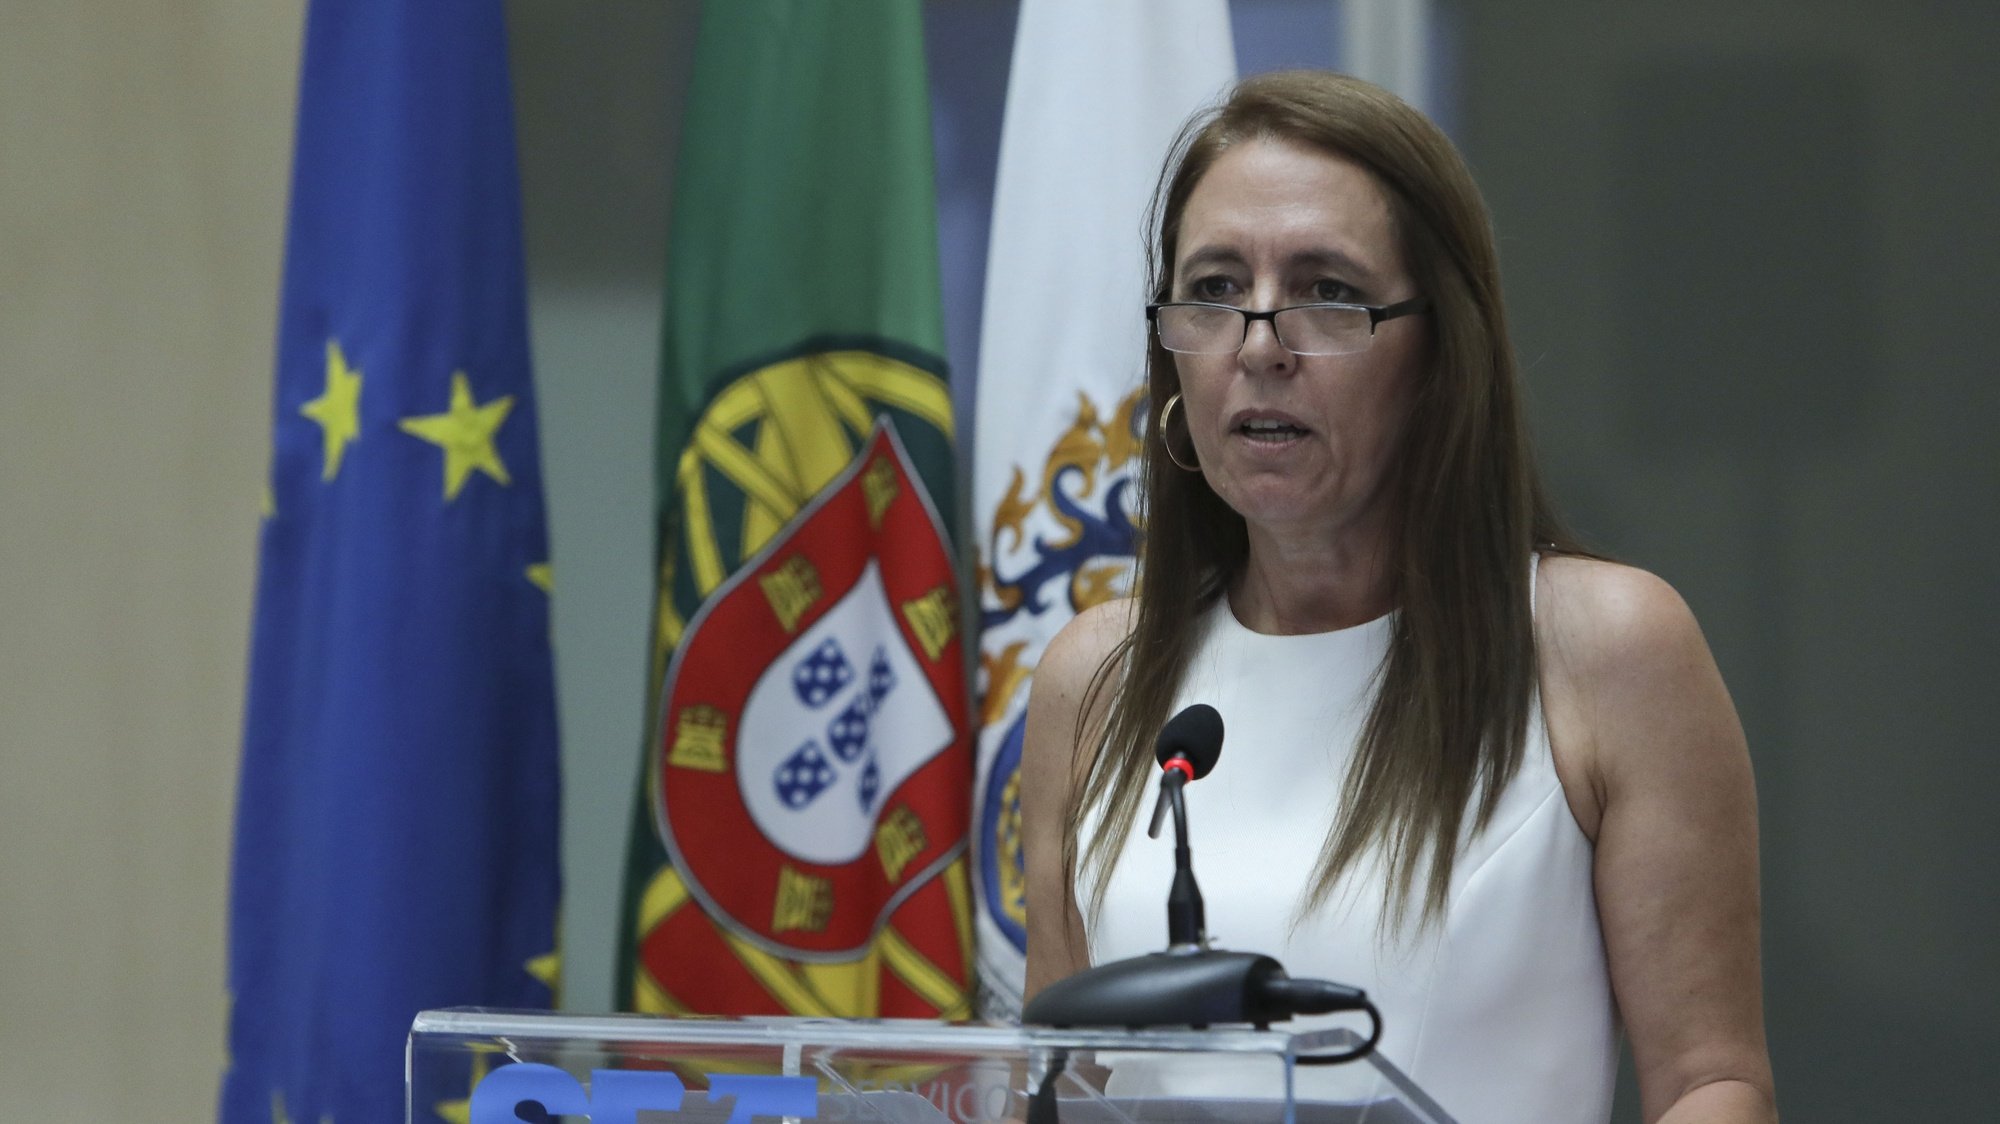 A diretora Nacional do SEF, Cristina Gatões intervém na cerimónia comemorativa do 43.º aniversário do SEF - Serviço de Estrangeiros e Fronteiras, esta tarde na sede do mesmo em Oeiras. 28 de junho de 2019 . MIGUEL A. LOPES/LUSA